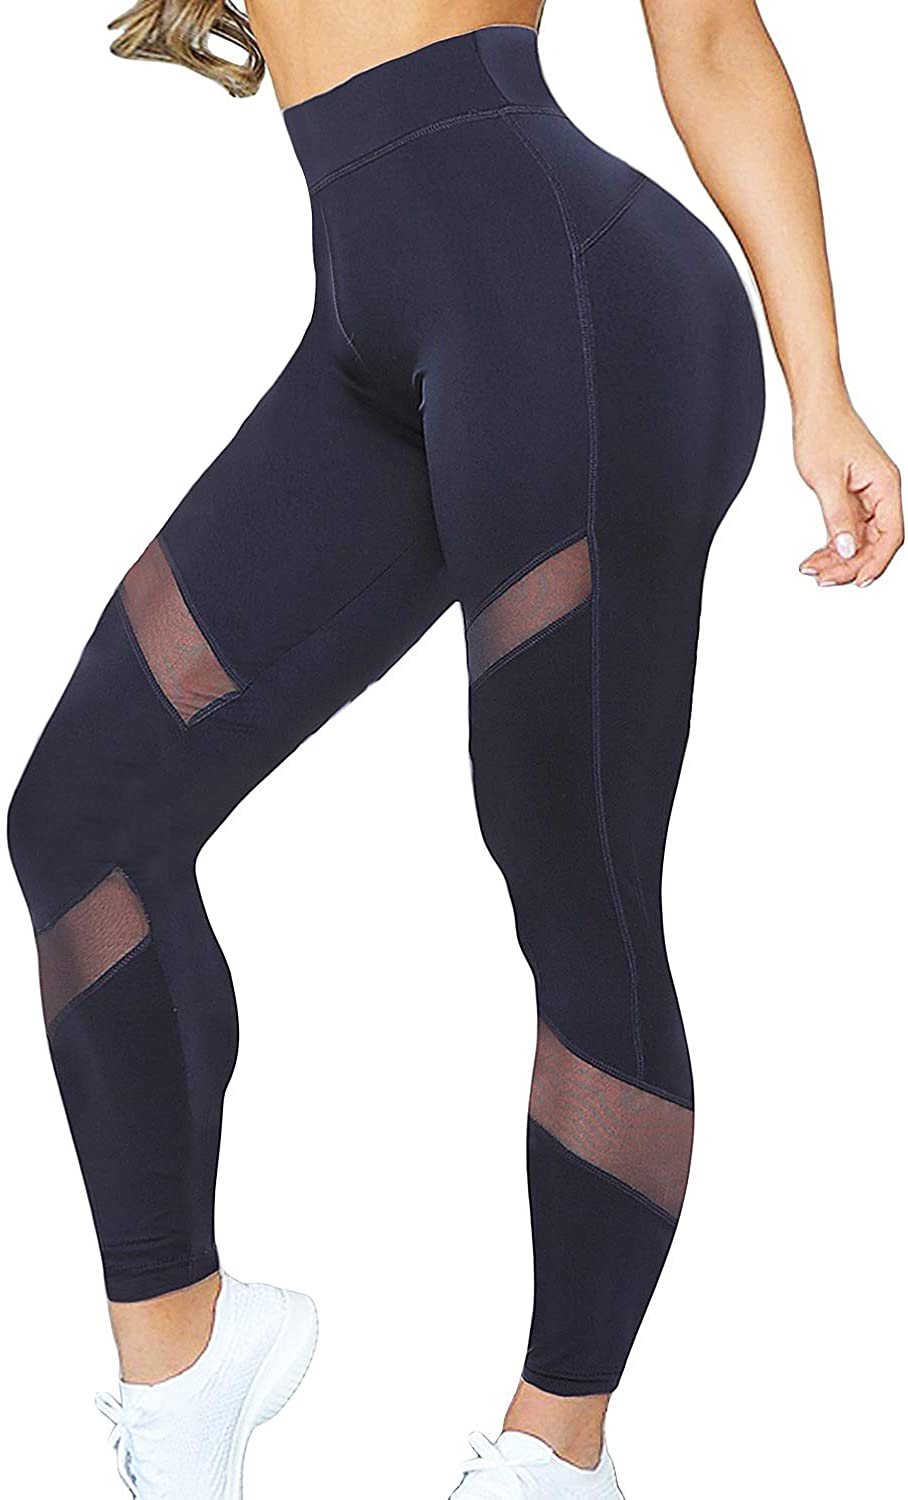 KIWI RATA - Pants/leggings/mallas de yoga para mujer, de cintura alta,  drapeado en los glúteos, con control de abdomen; ideales para  entrenamiento